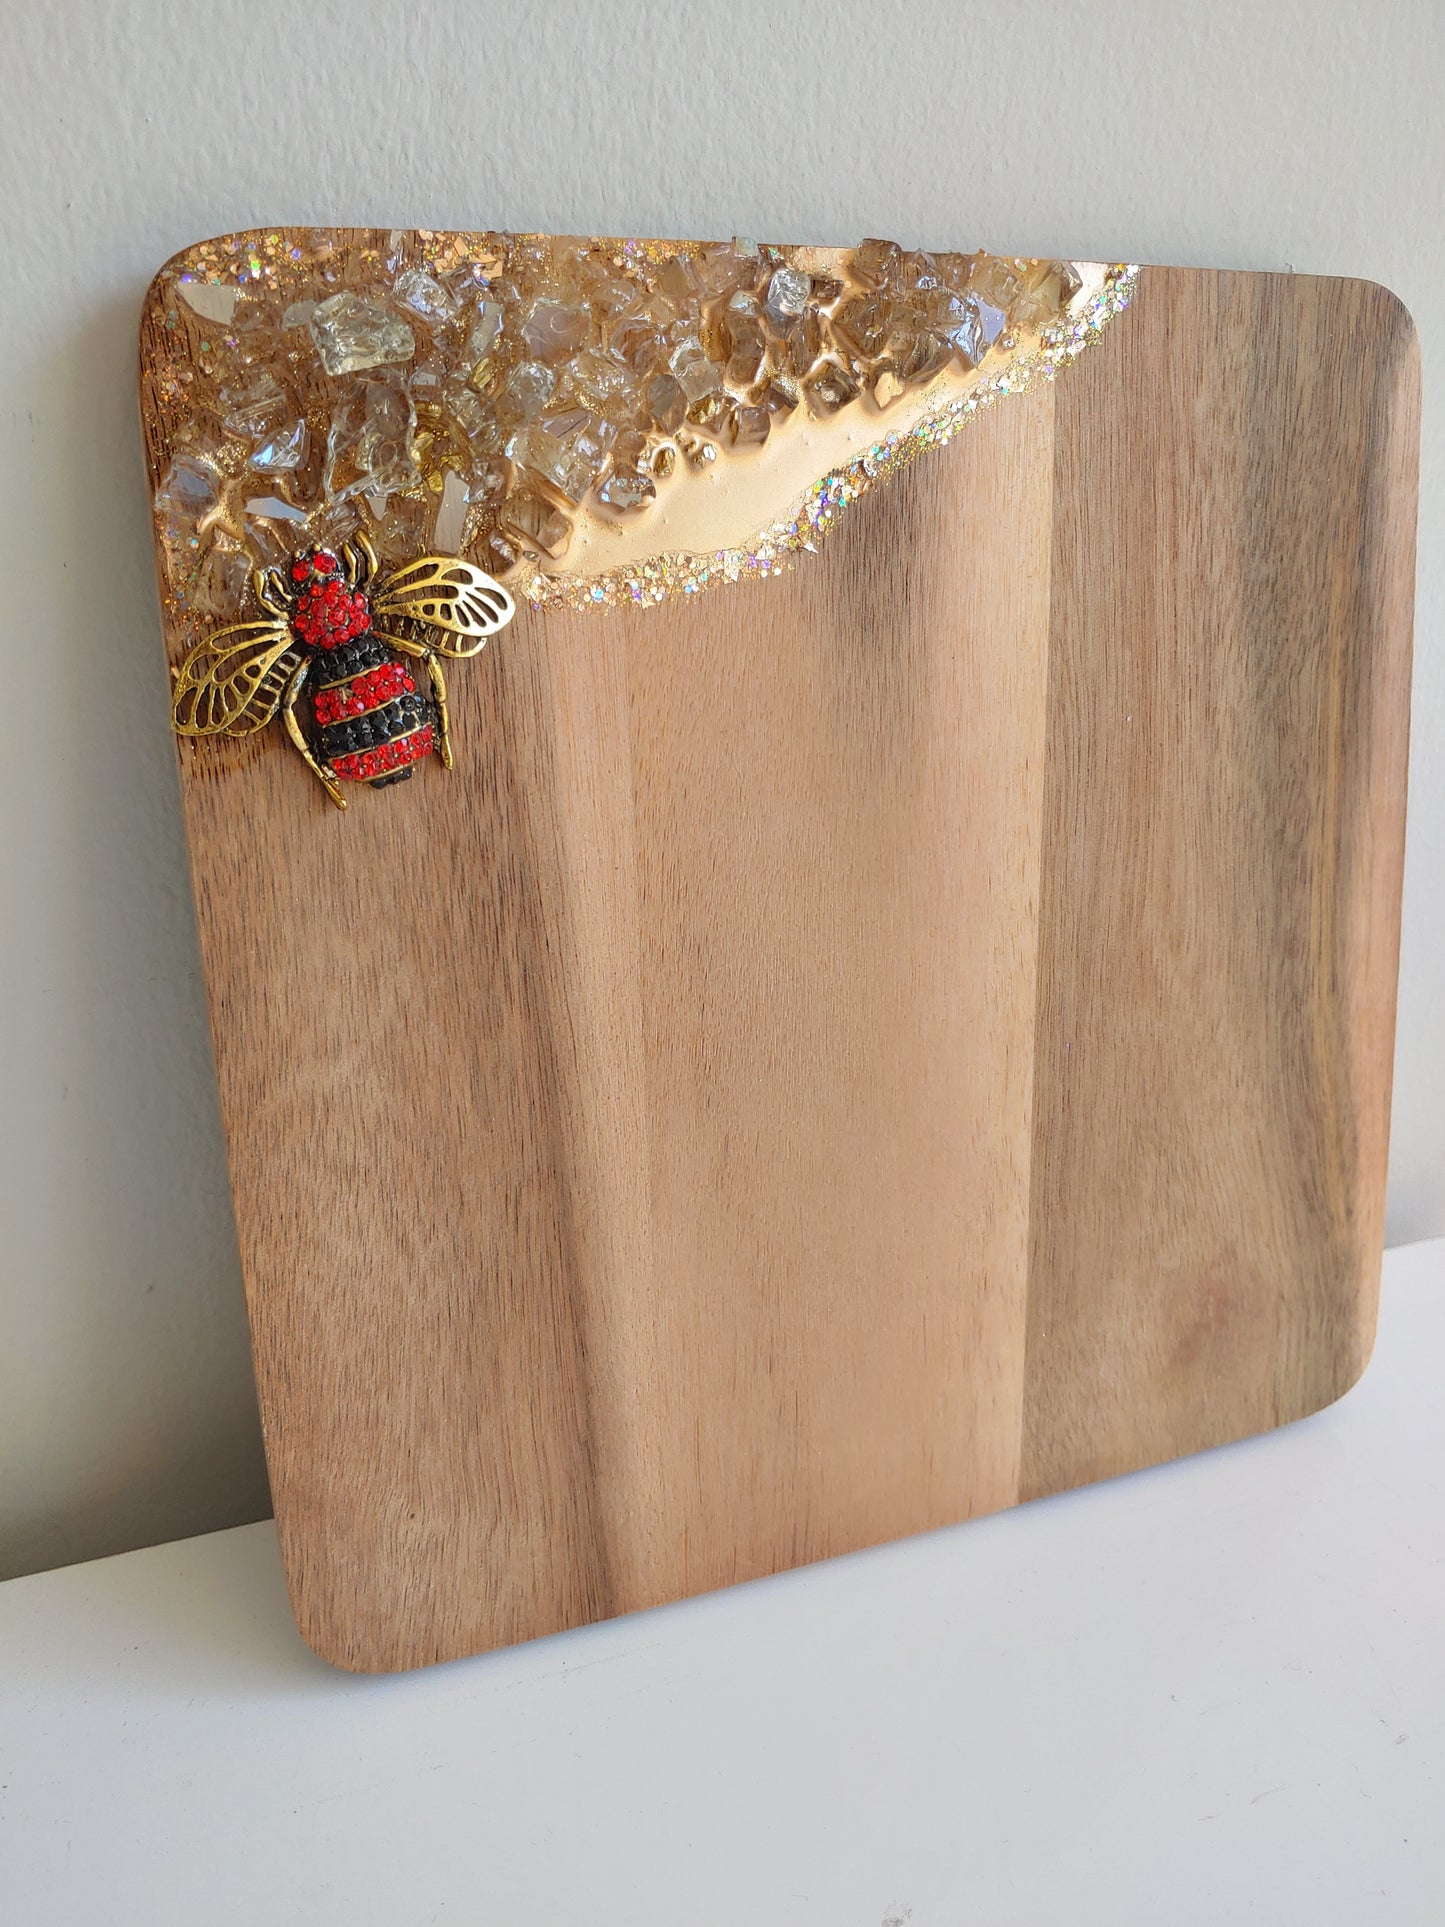 Mini acacia bee board in rhinestone red! 8x8